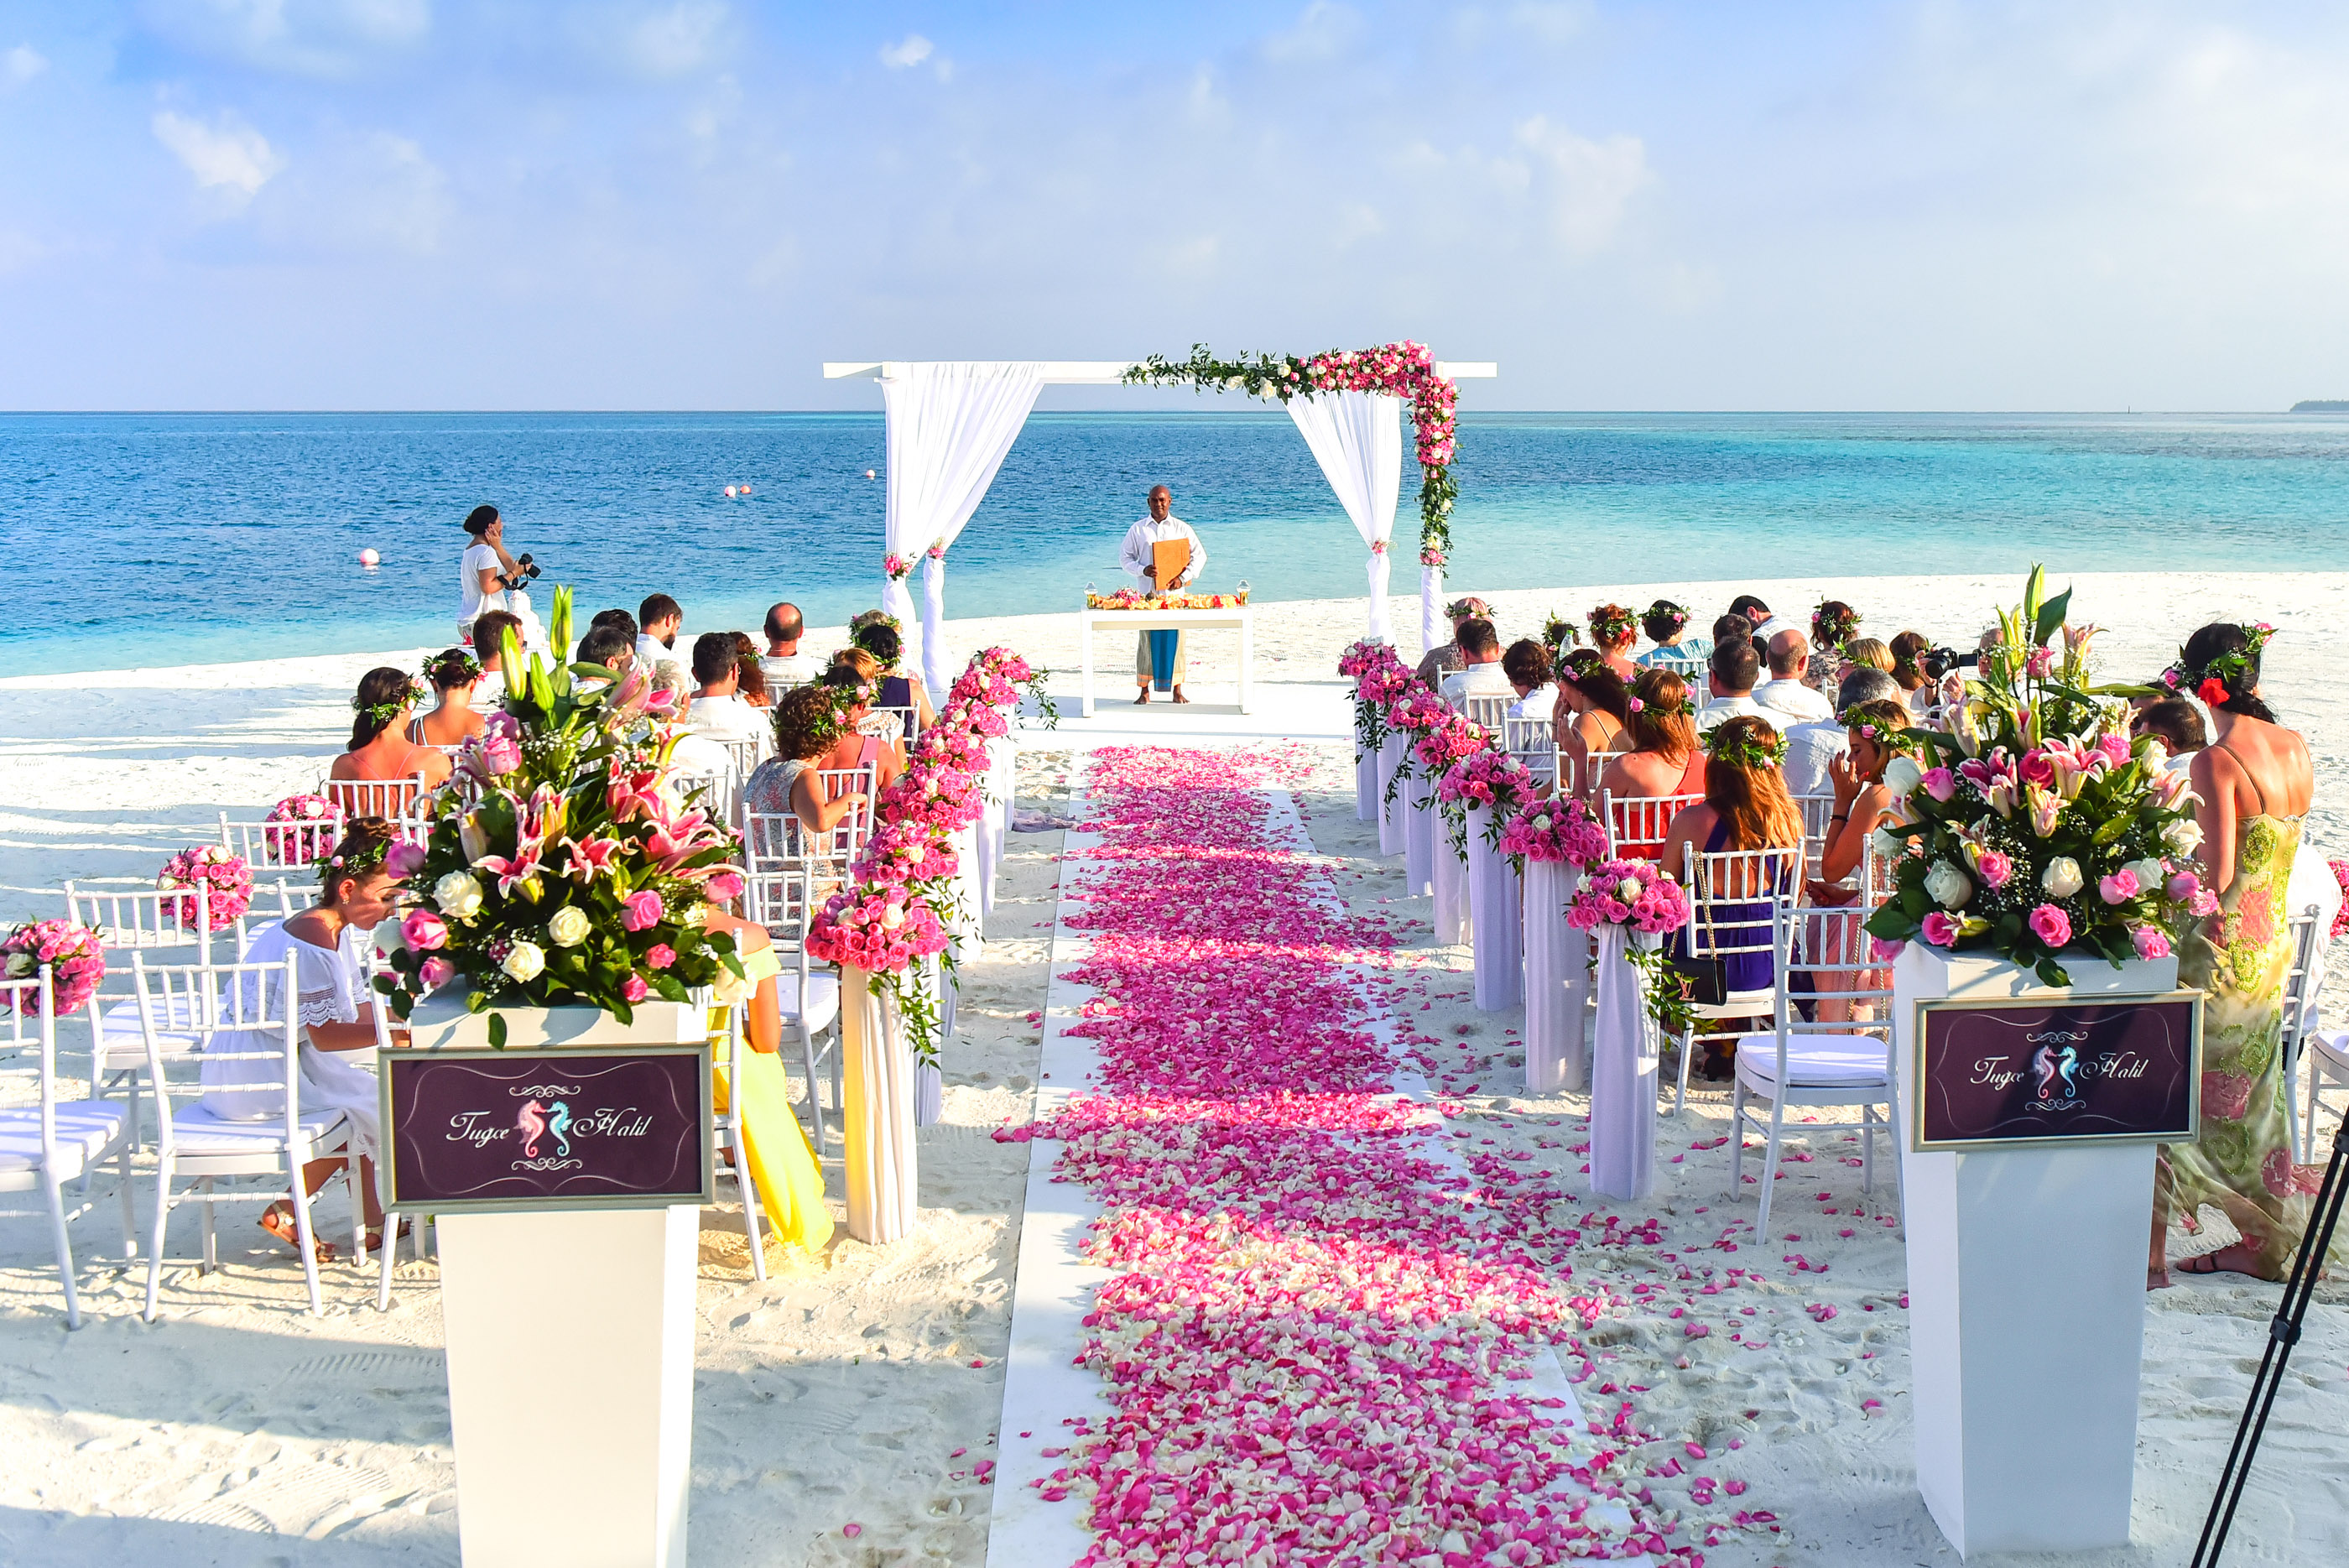 Seaside Wedding with rose walkway image - Free stock photo - Public Domain photo - CC0 Images